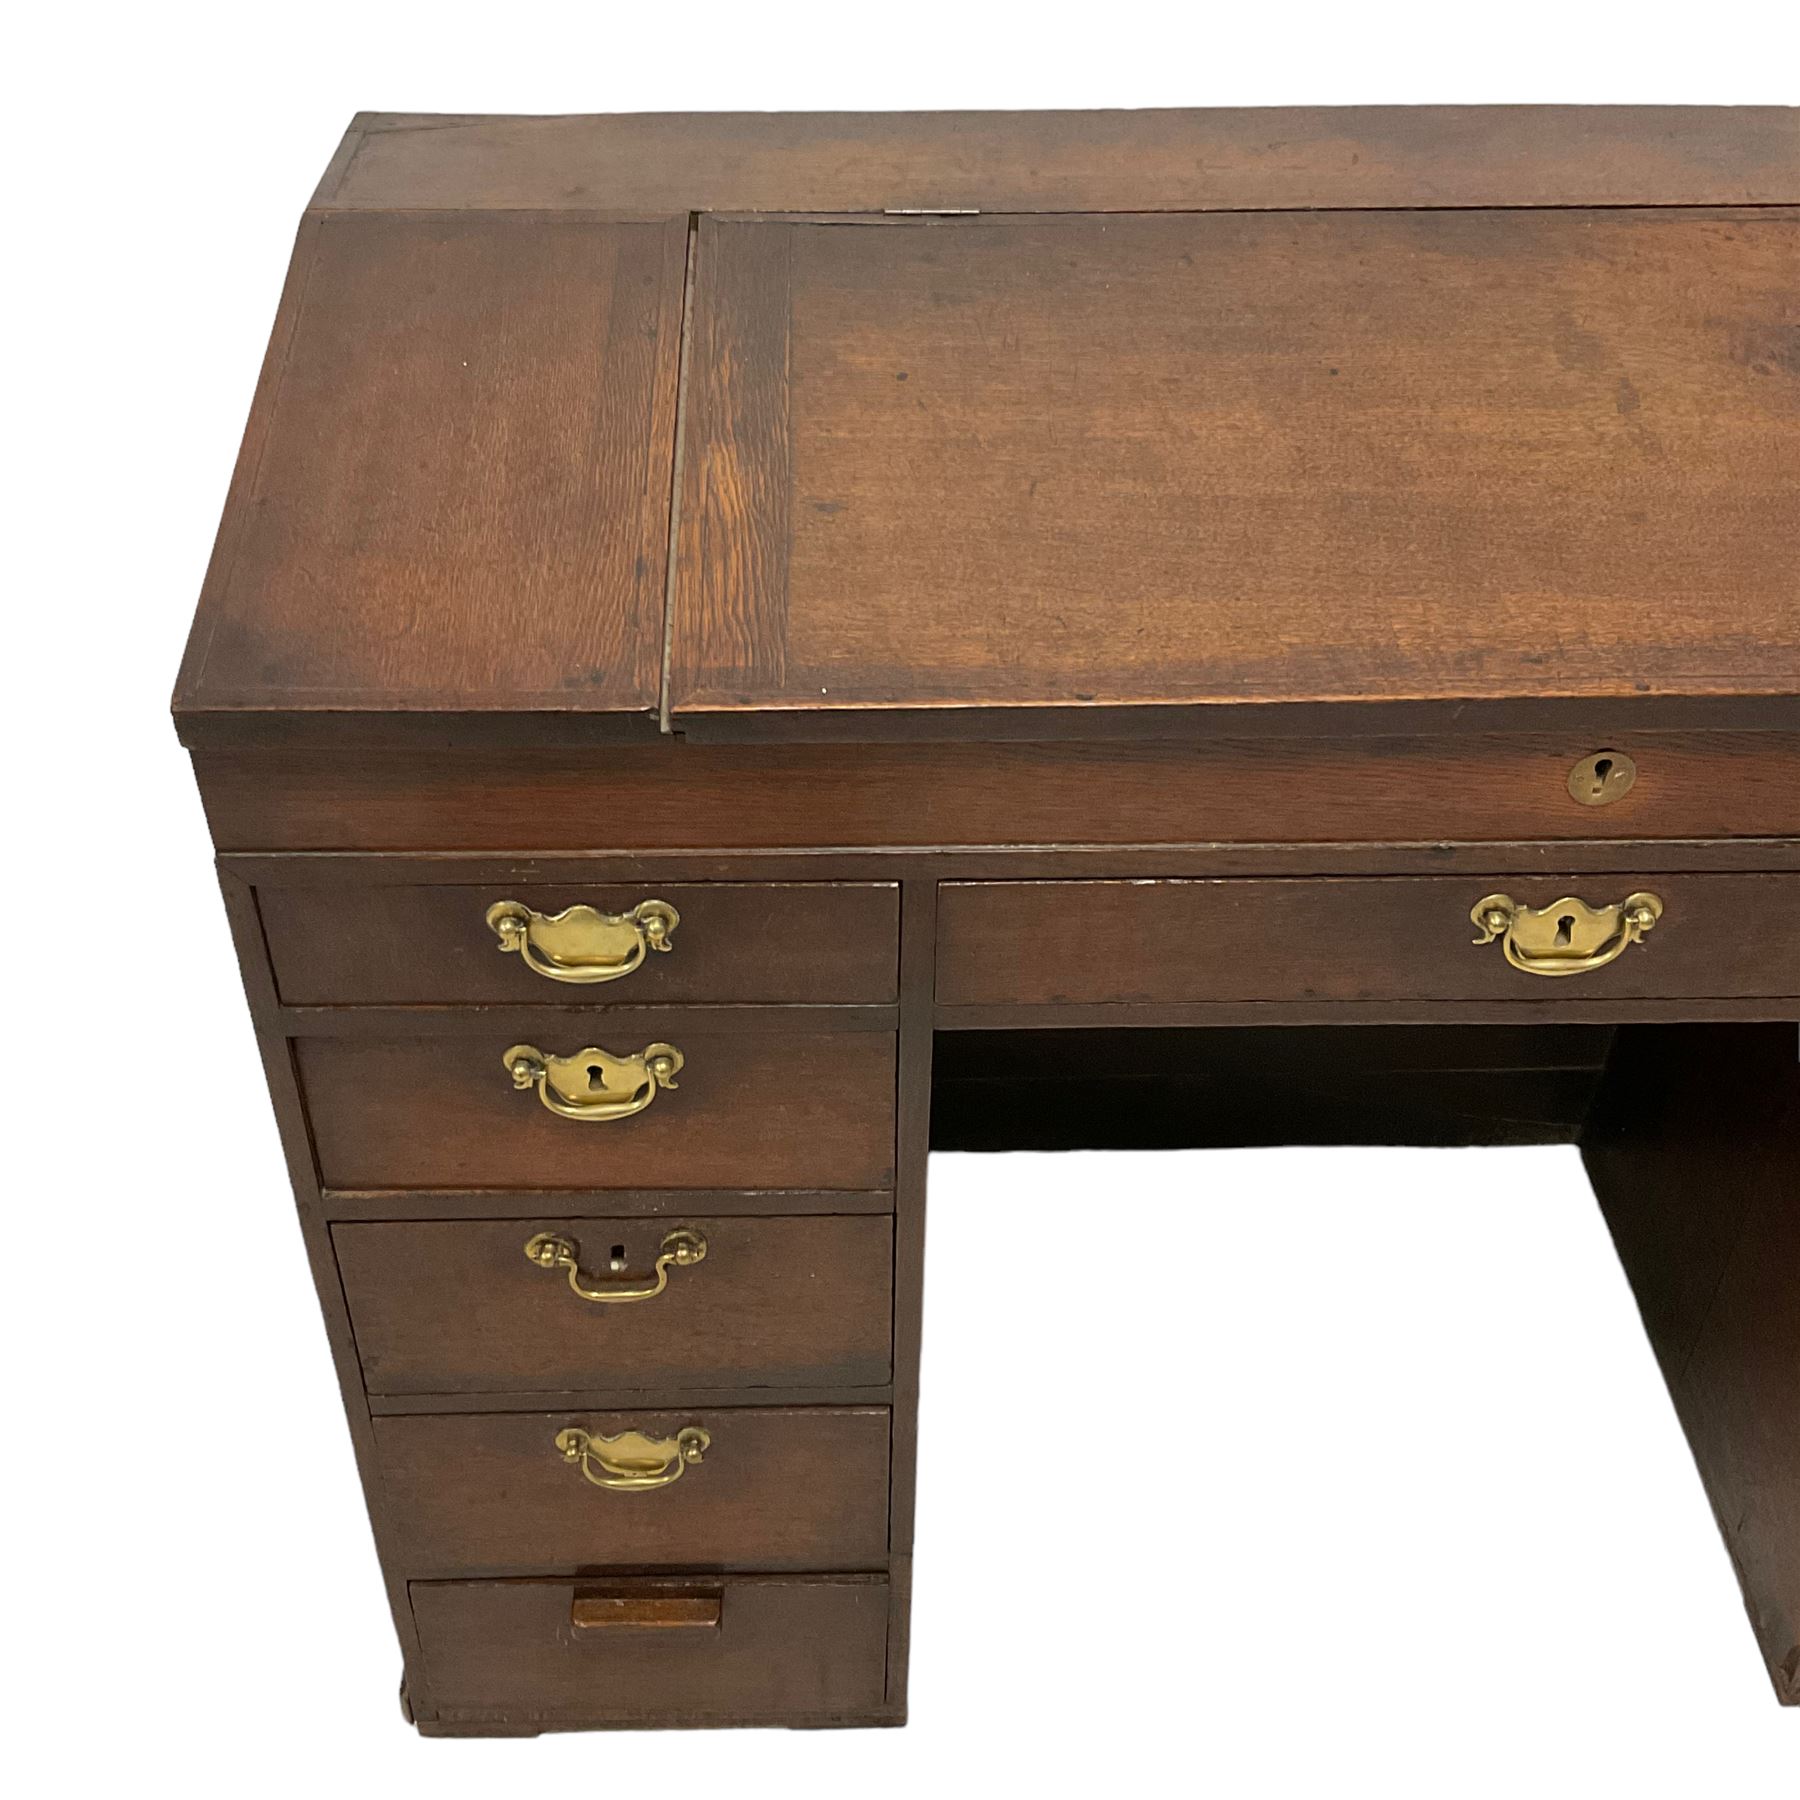 George III oak kneehole clerk's desk - Image 2 of 6